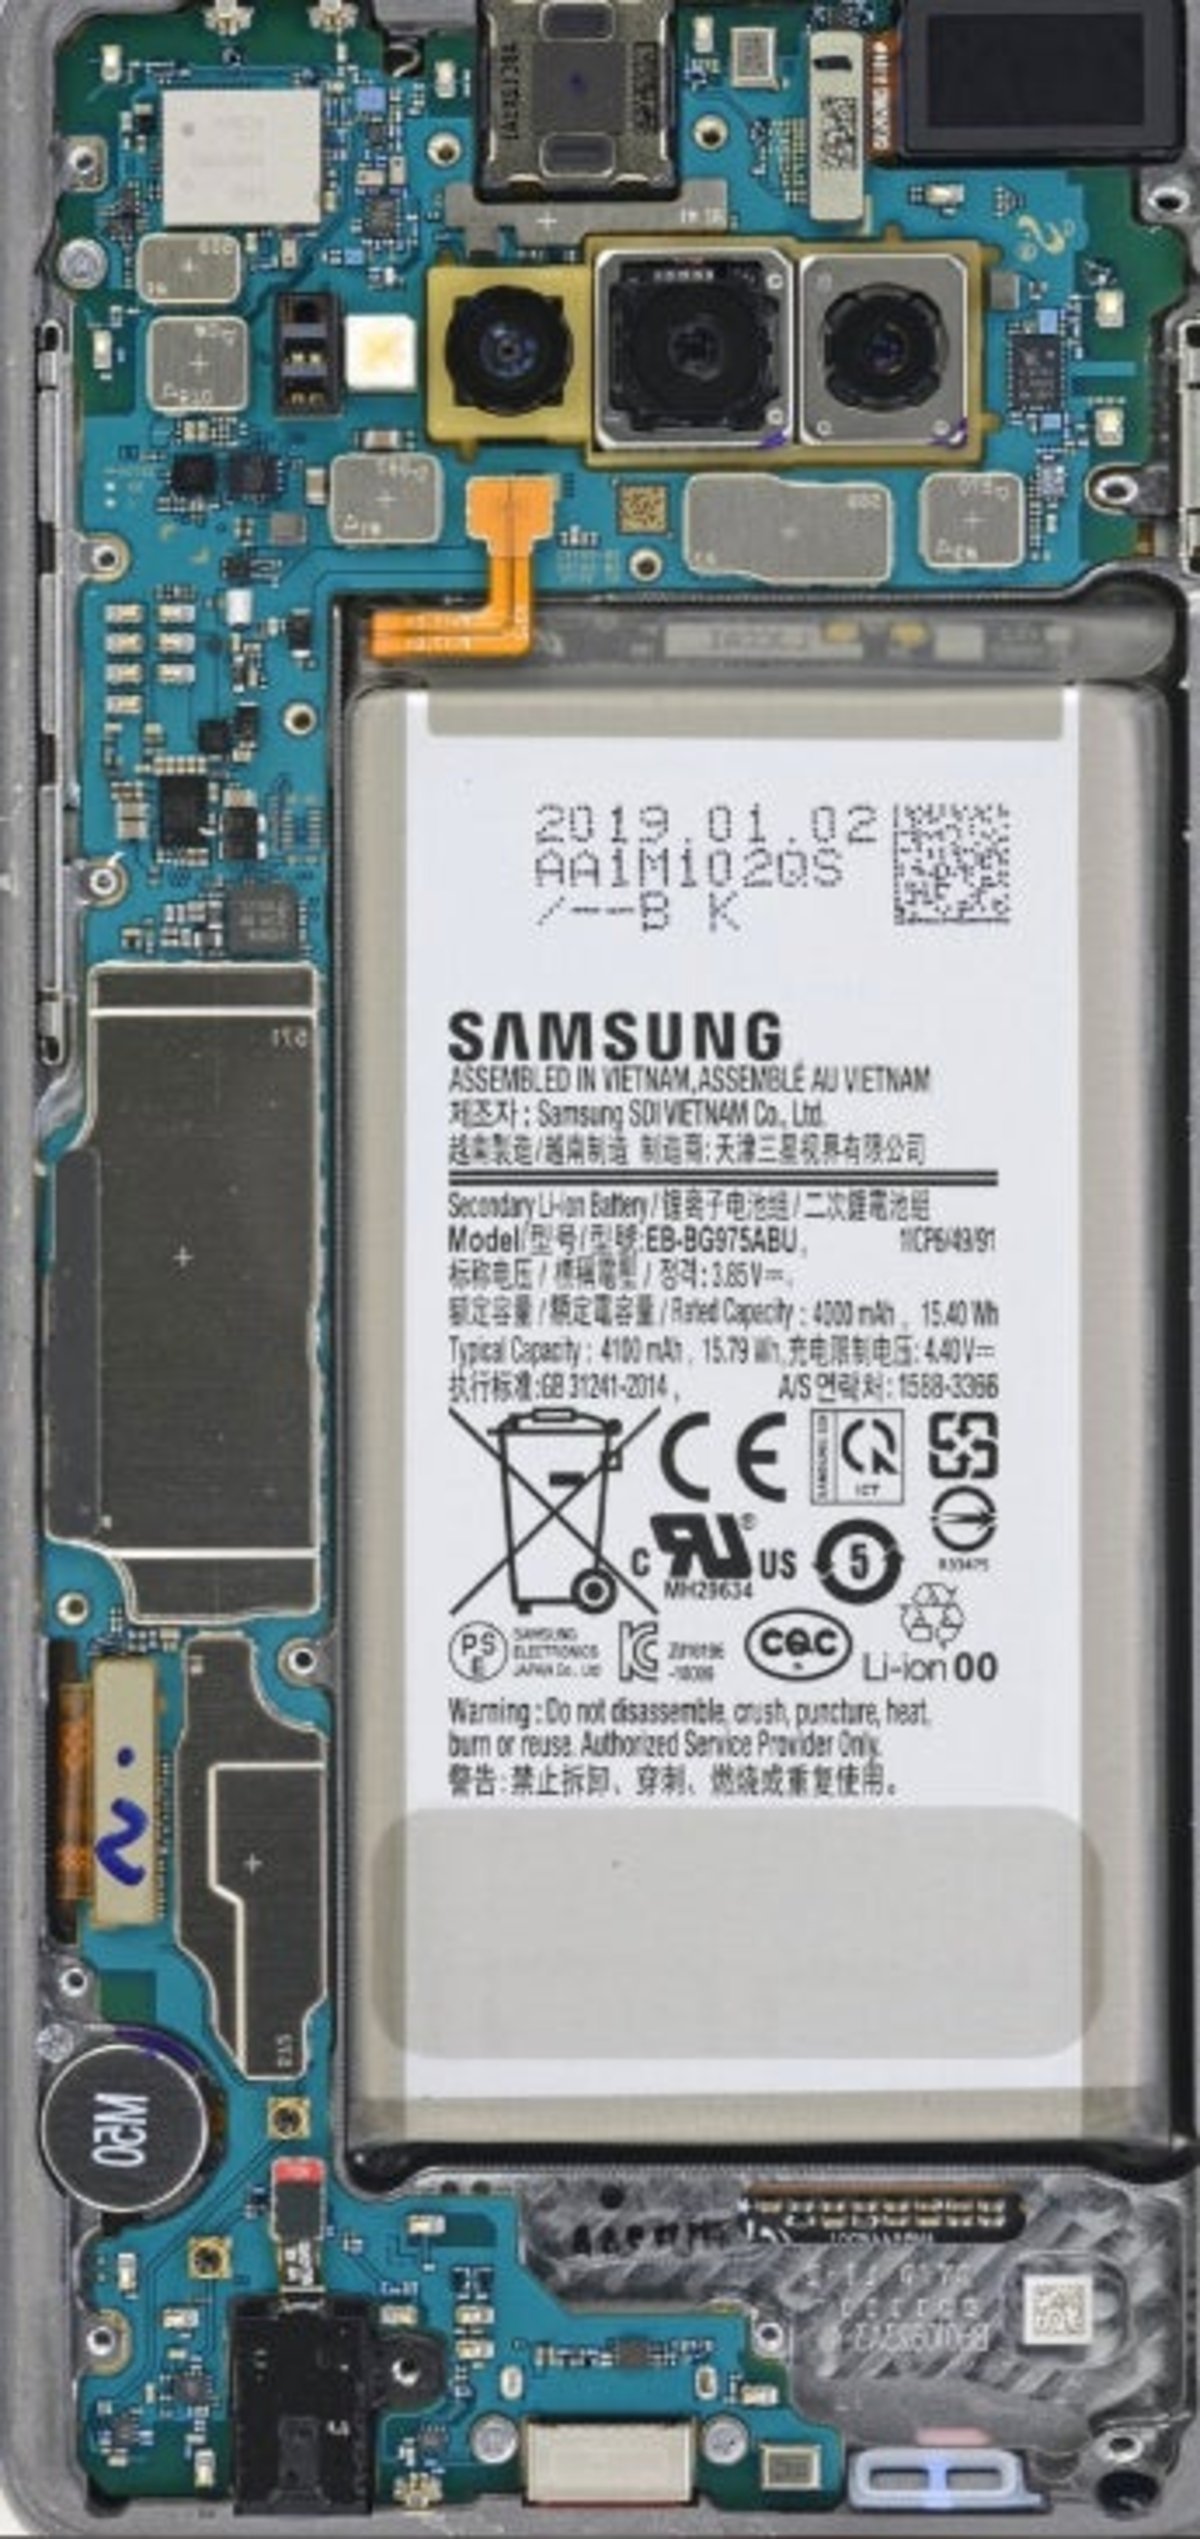 Samsung Galaxy S10 fondos pantalla trasera